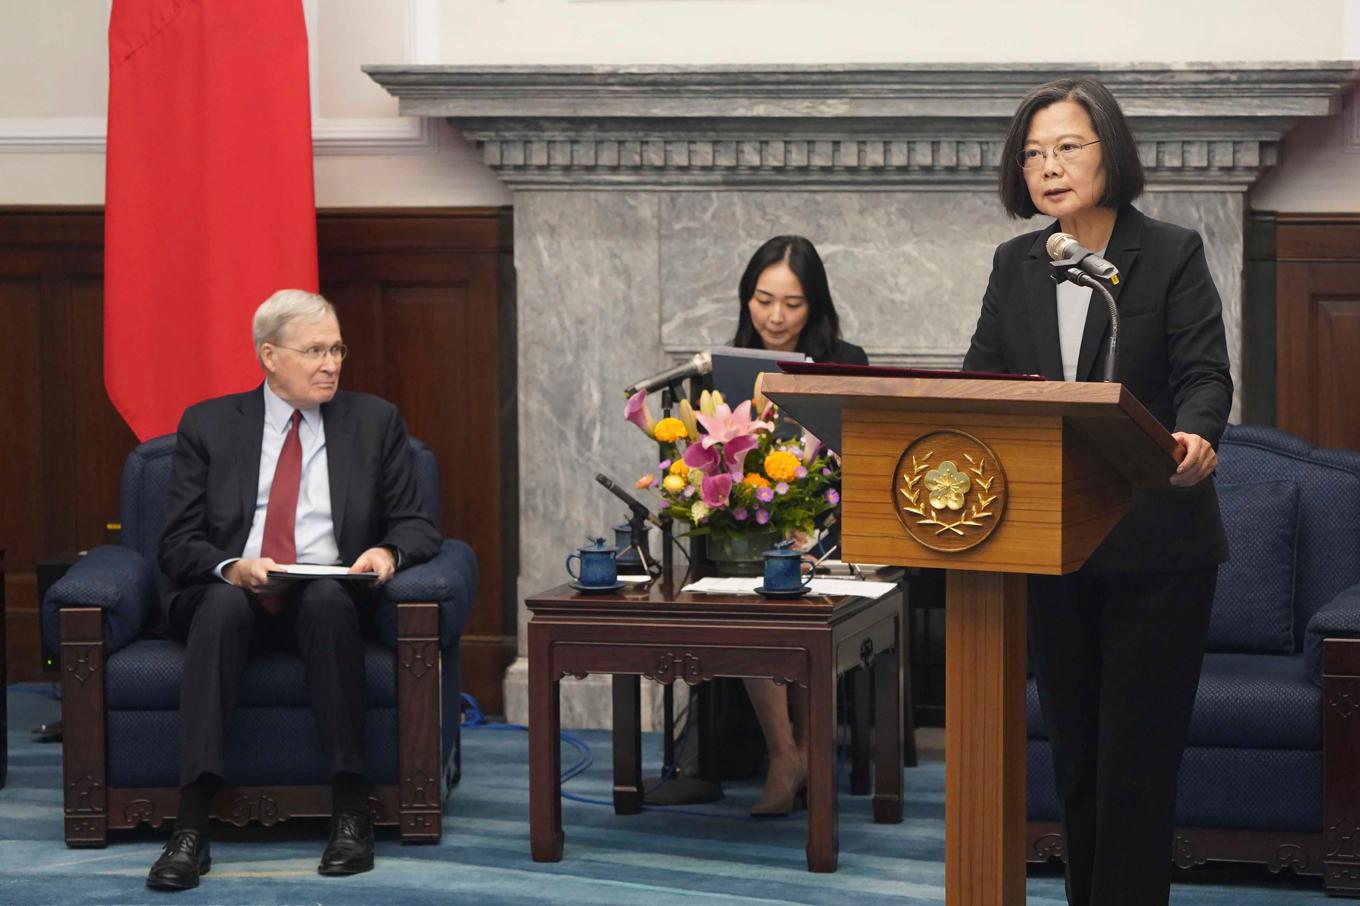 Förre amerikanska säkerhetsrådgivaren Stephen Hadley, till vänster och Taiwans president Tsai Ing-wen i talarstolen under mötet i Taipei. Foto: ADen Hsu/AP/TT